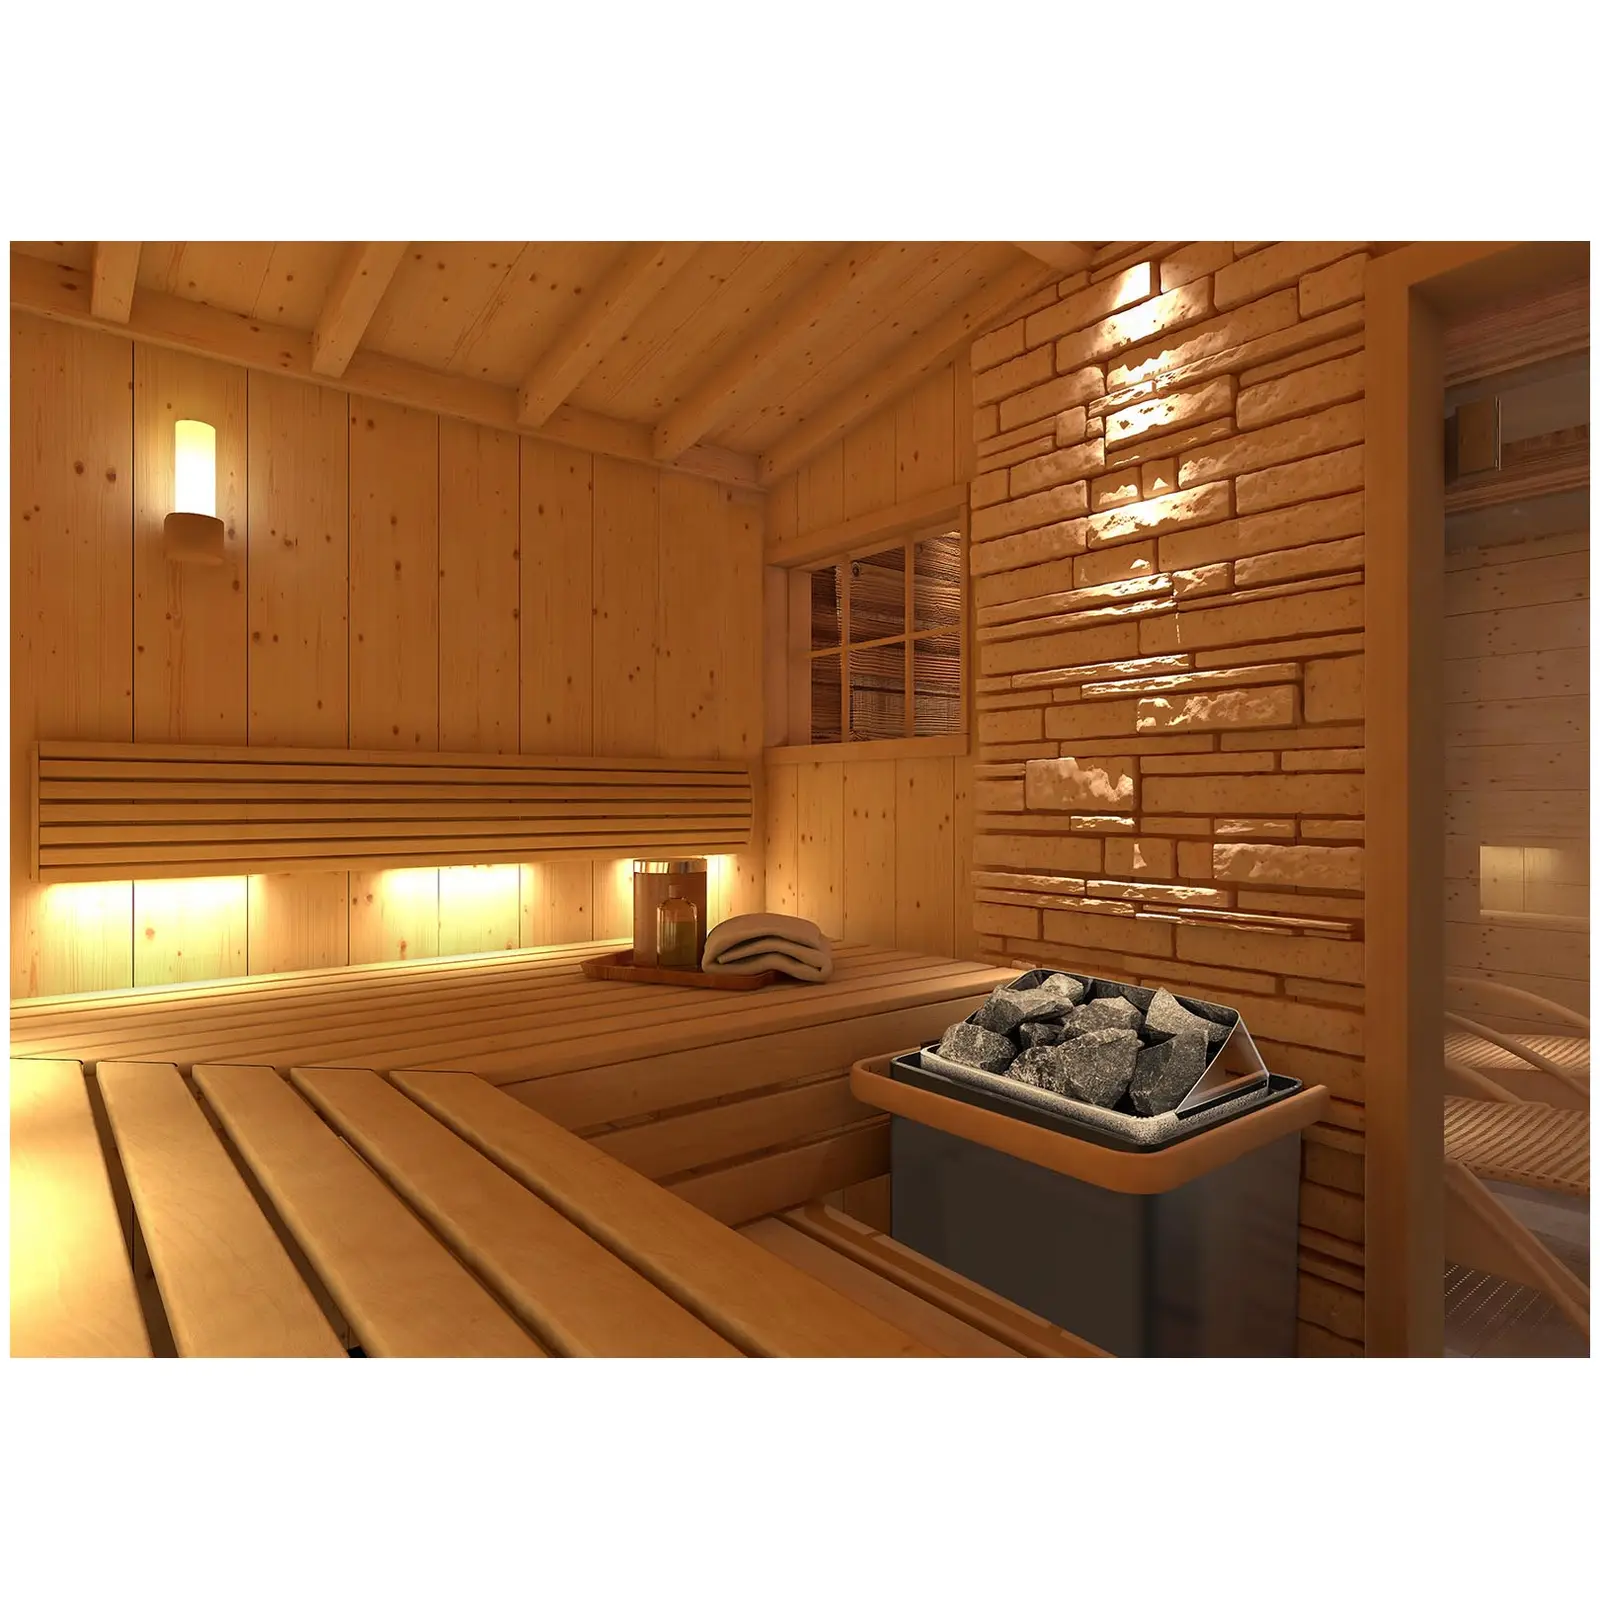 Piec do sauny - elektryczny - 6 kW - pokrętła